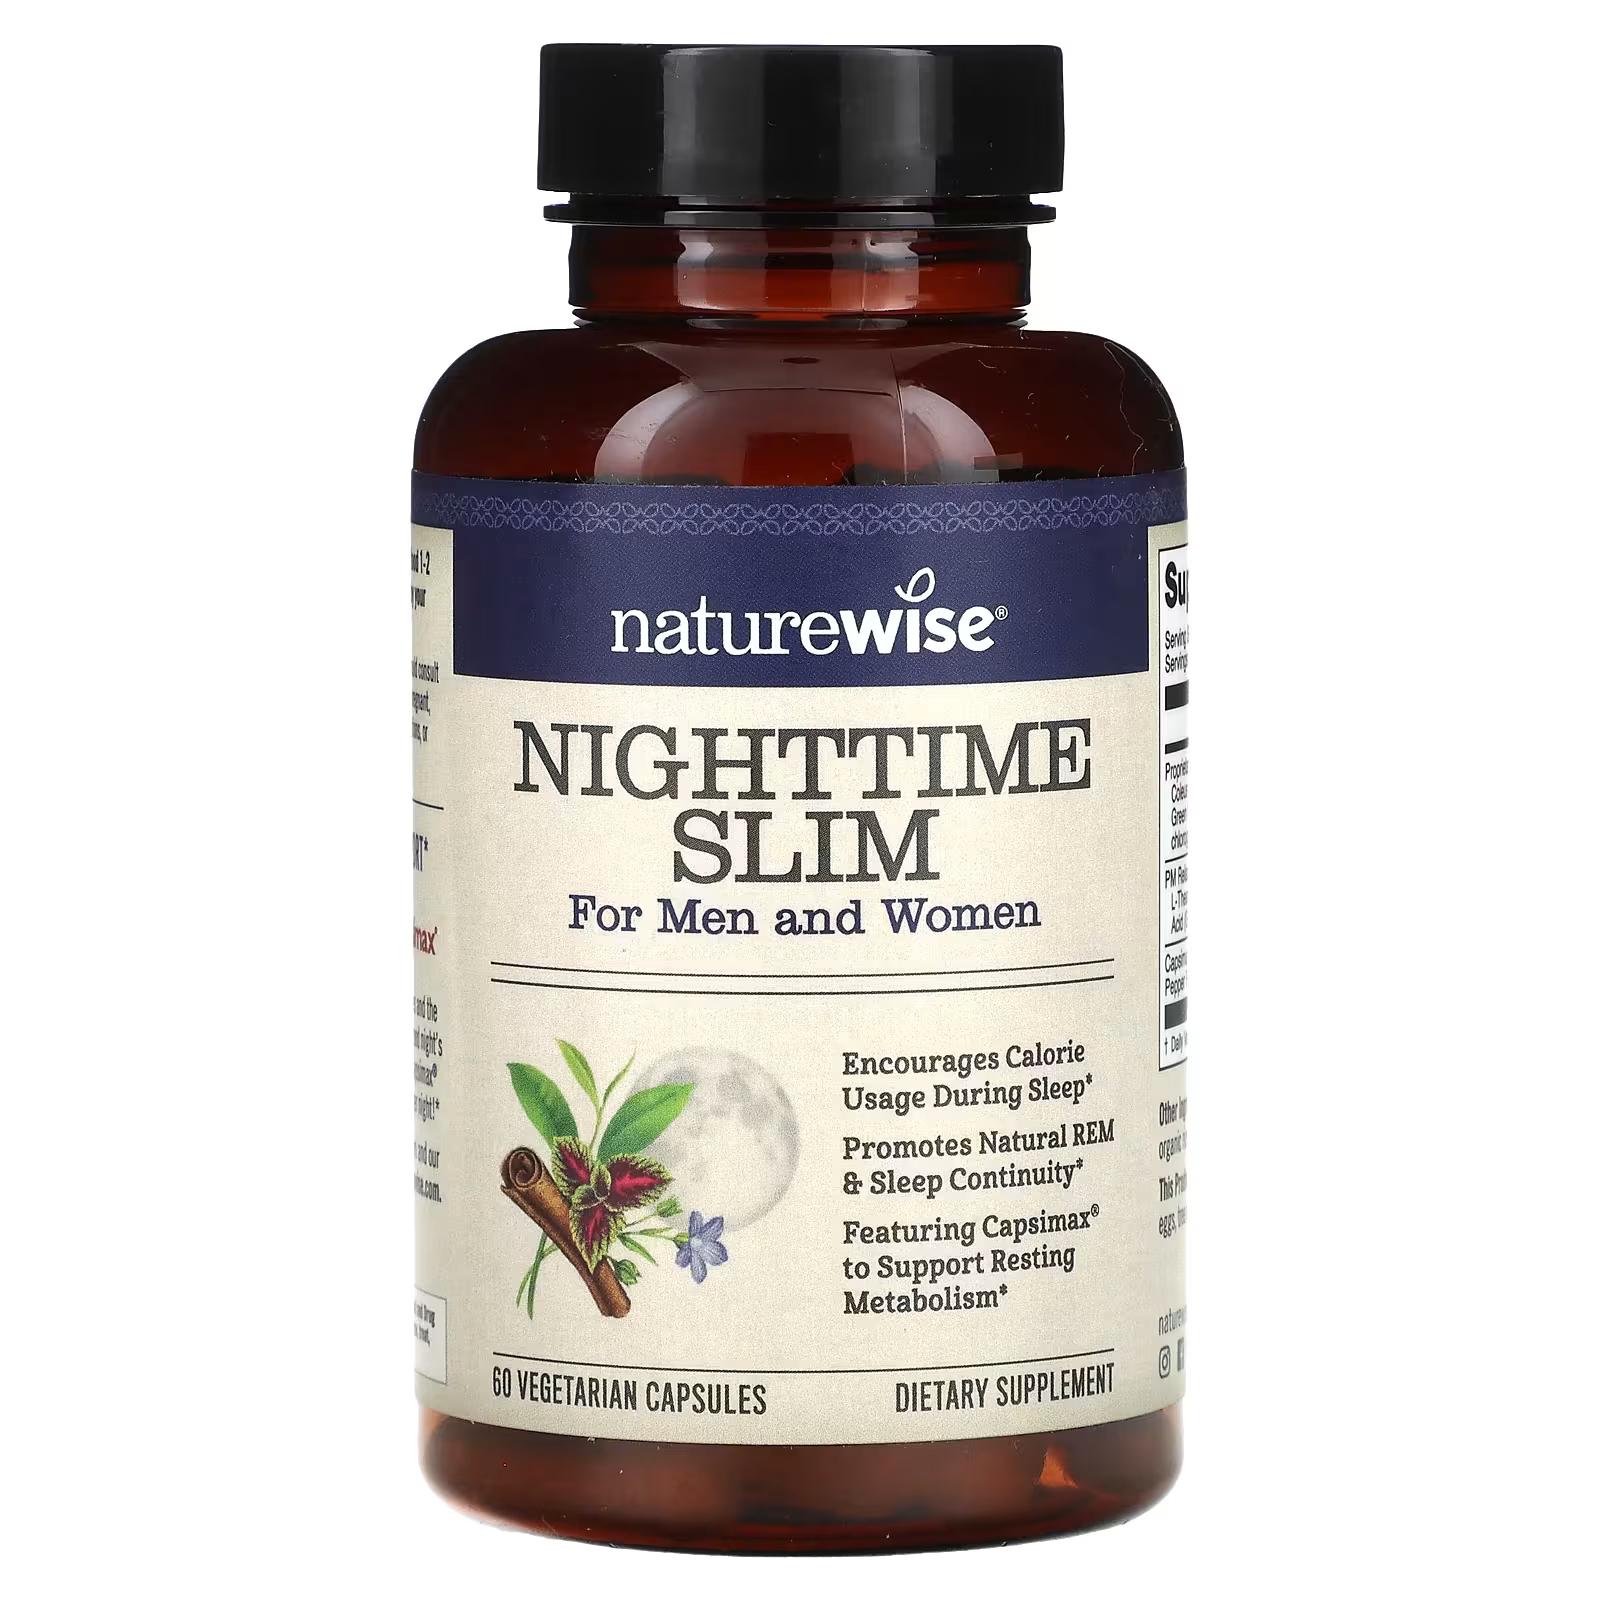 Пищевая добавка NatureWise NightTime Slim для мужчин и женщин, 60 капсул пищевая добавка naturewise nighttime slim для мужчин и женщин 60 капсул